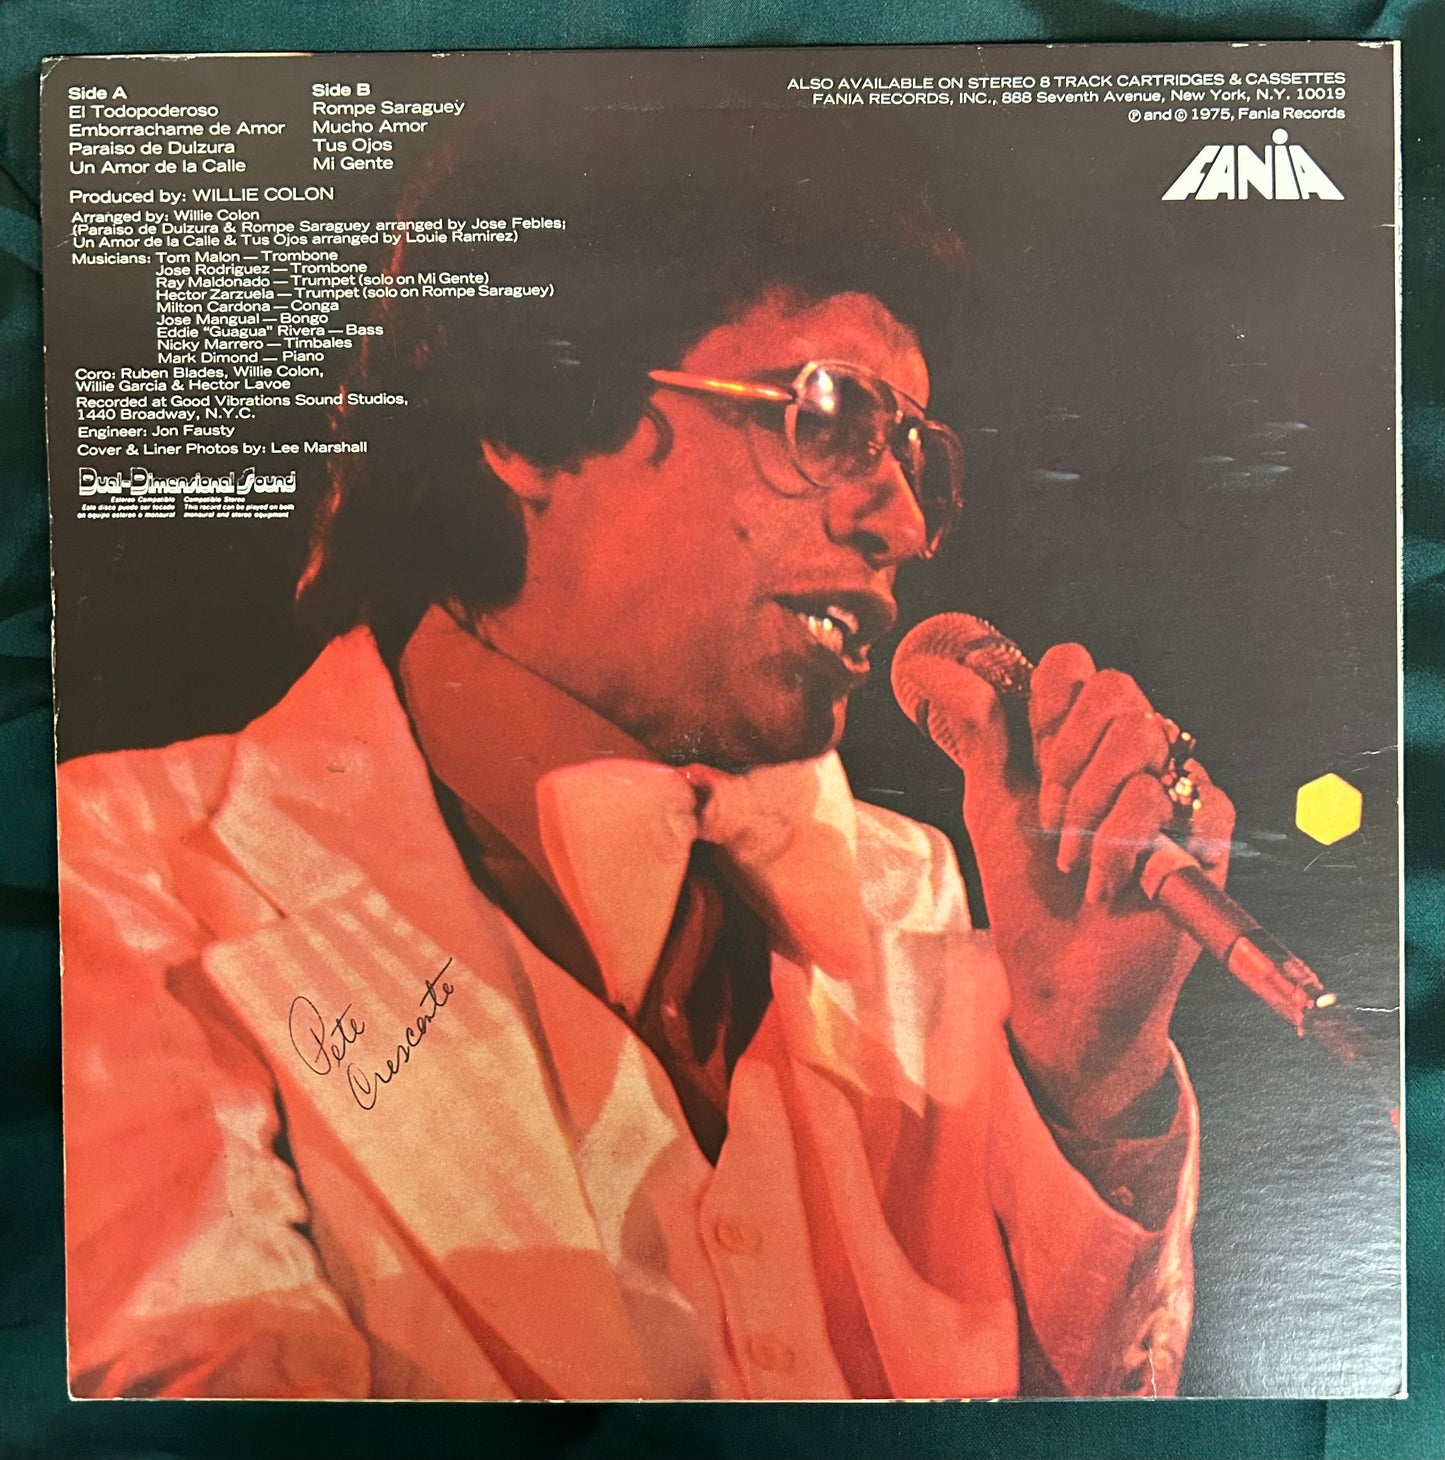 Hector Lavoe - La Voz 1st Press 1975 Fania Cloud Label